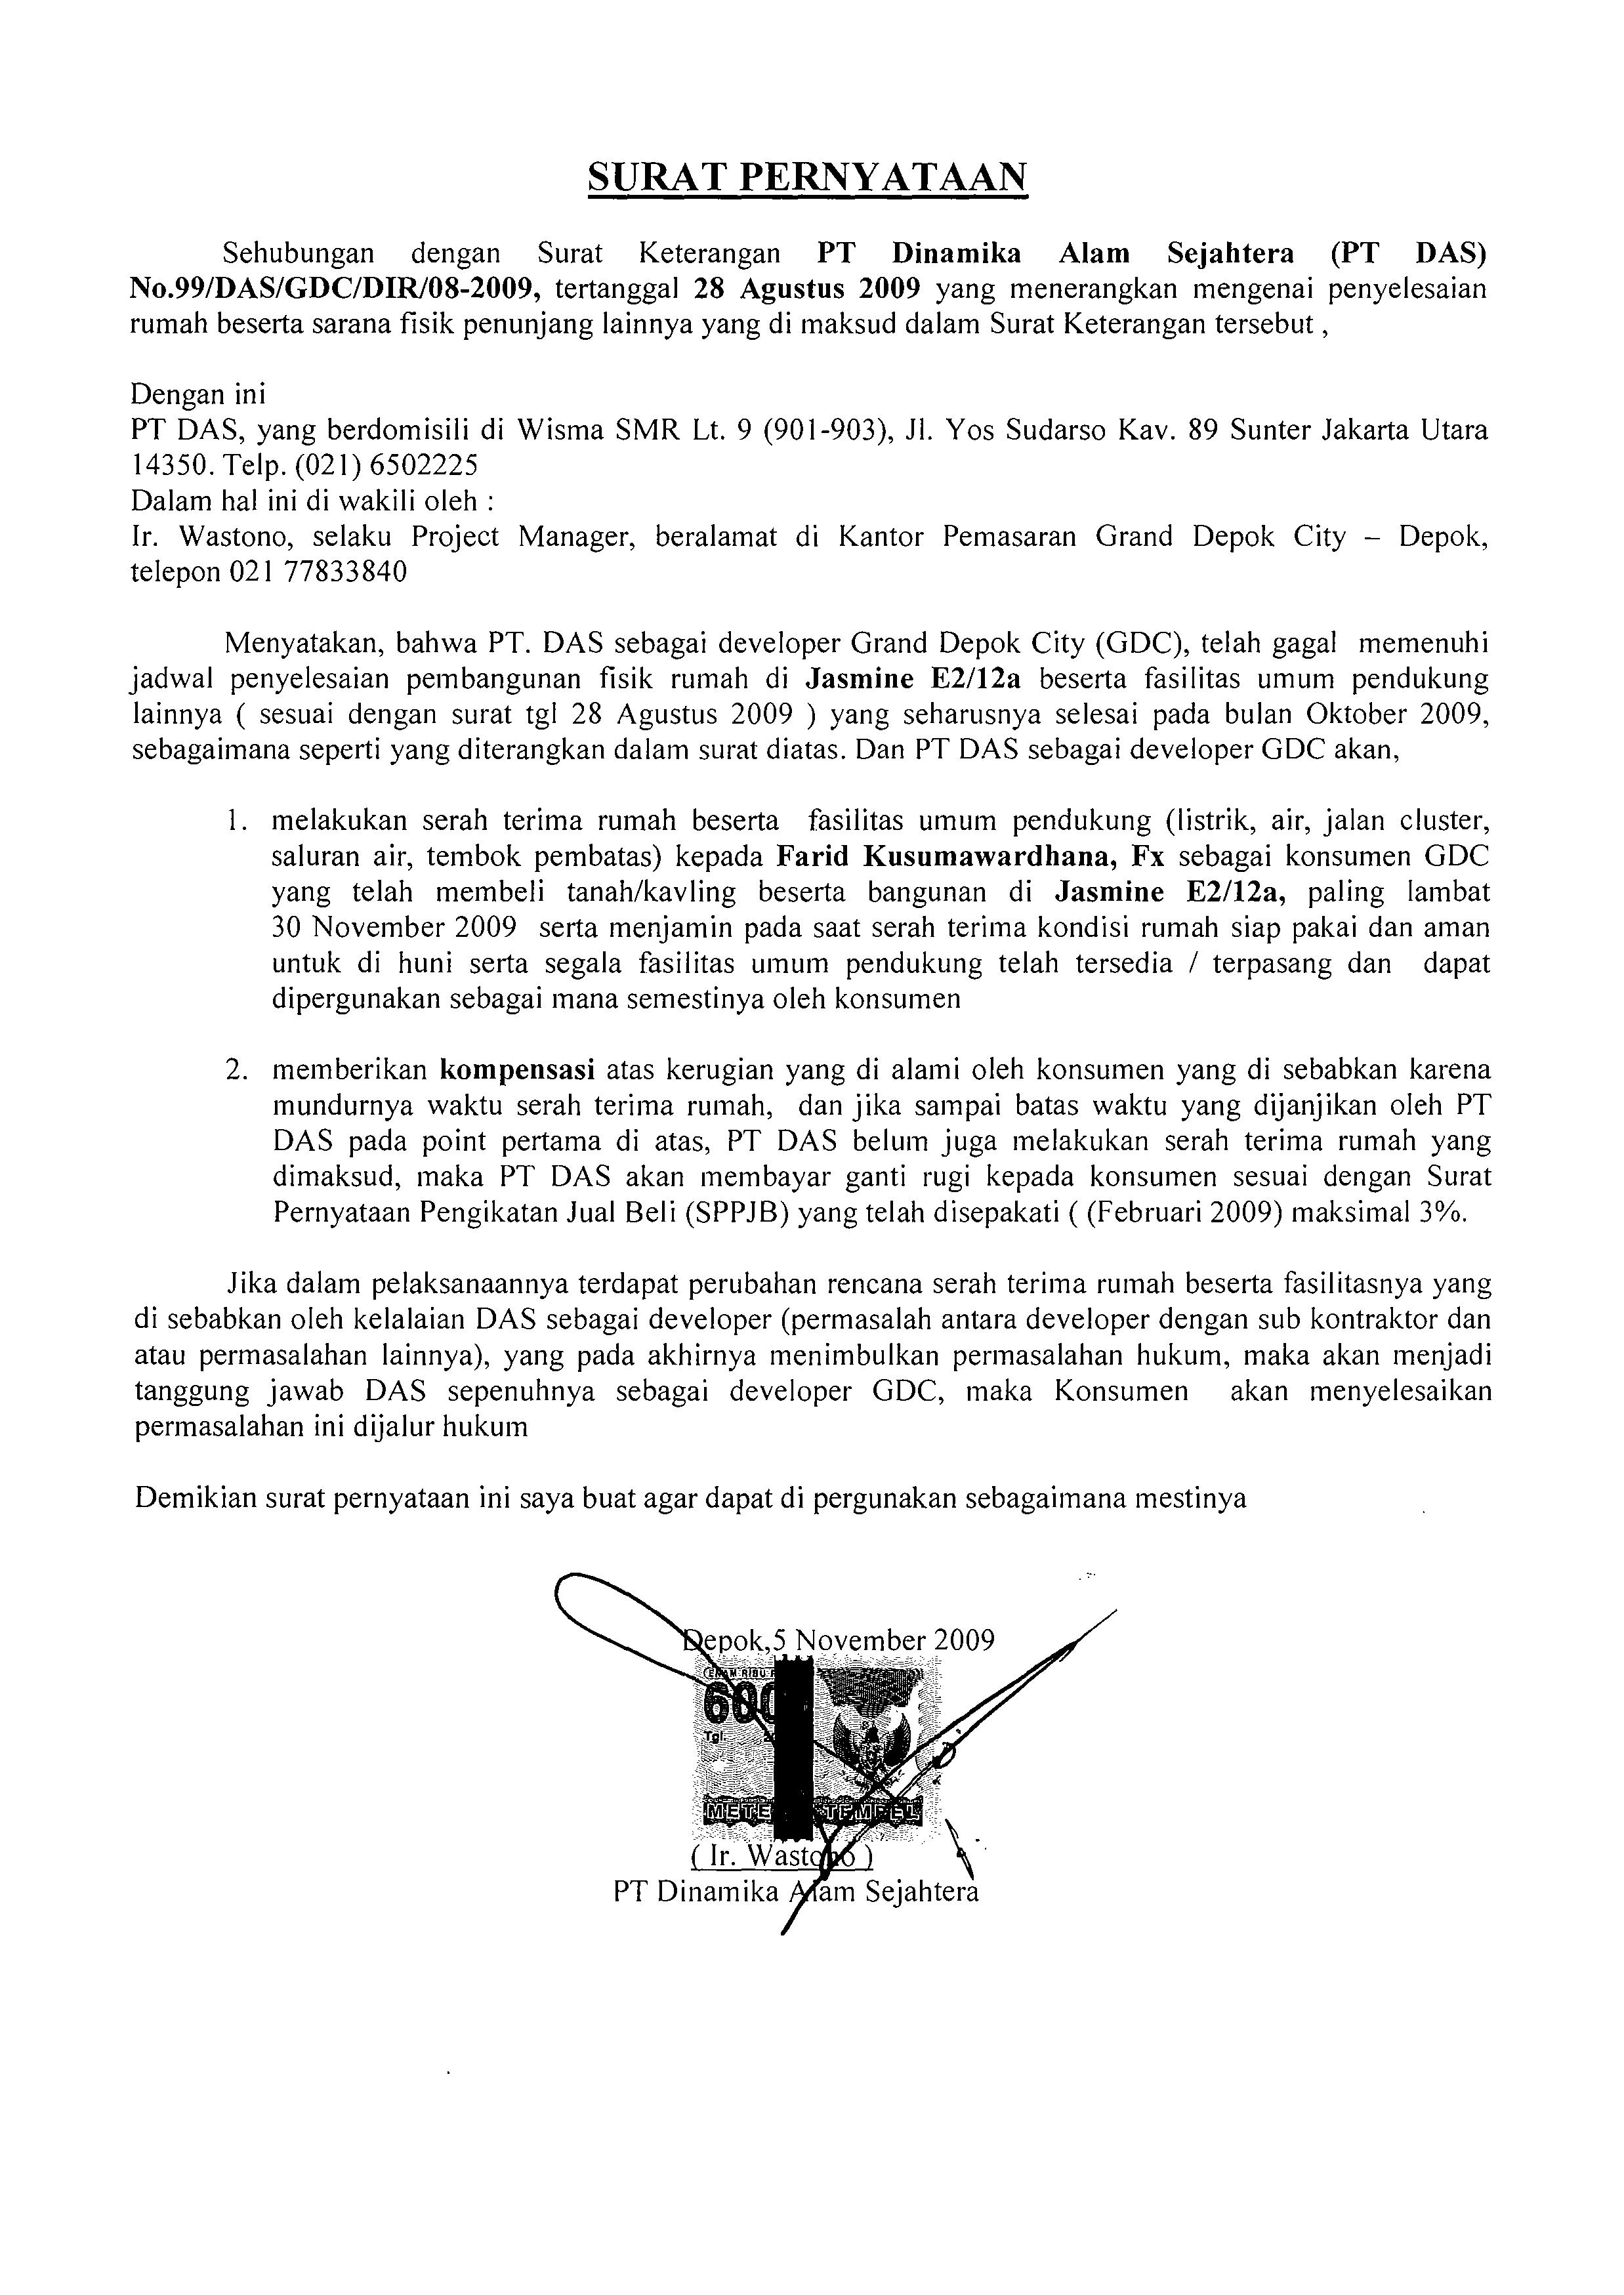 Surat Pernyataan Gdc Kudhana Files